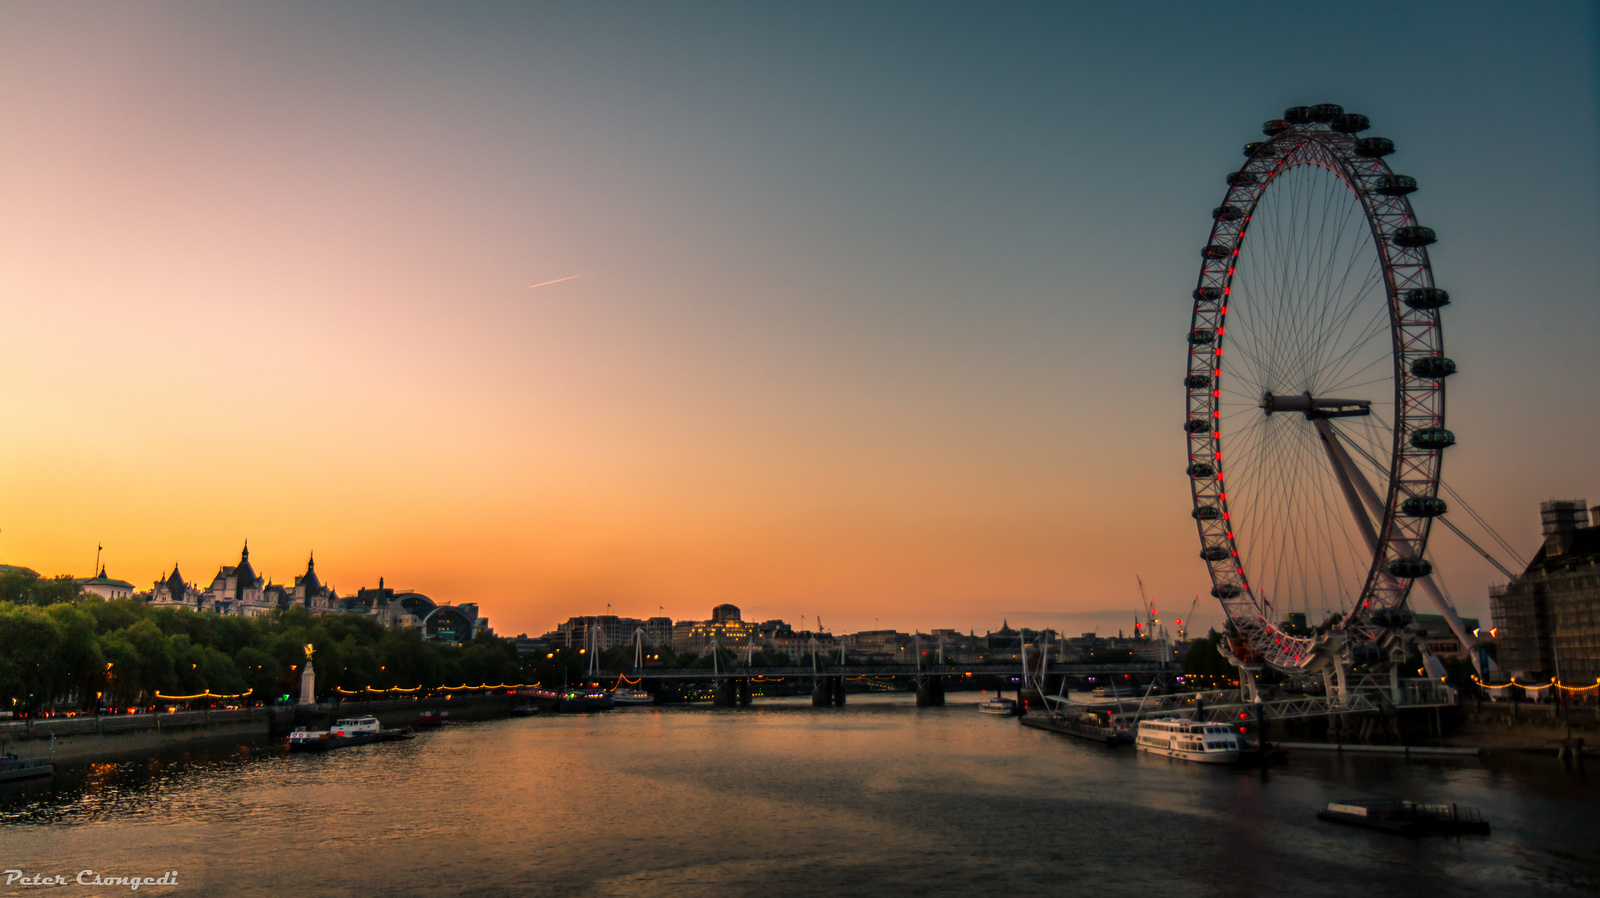 Londoneye a naplementében